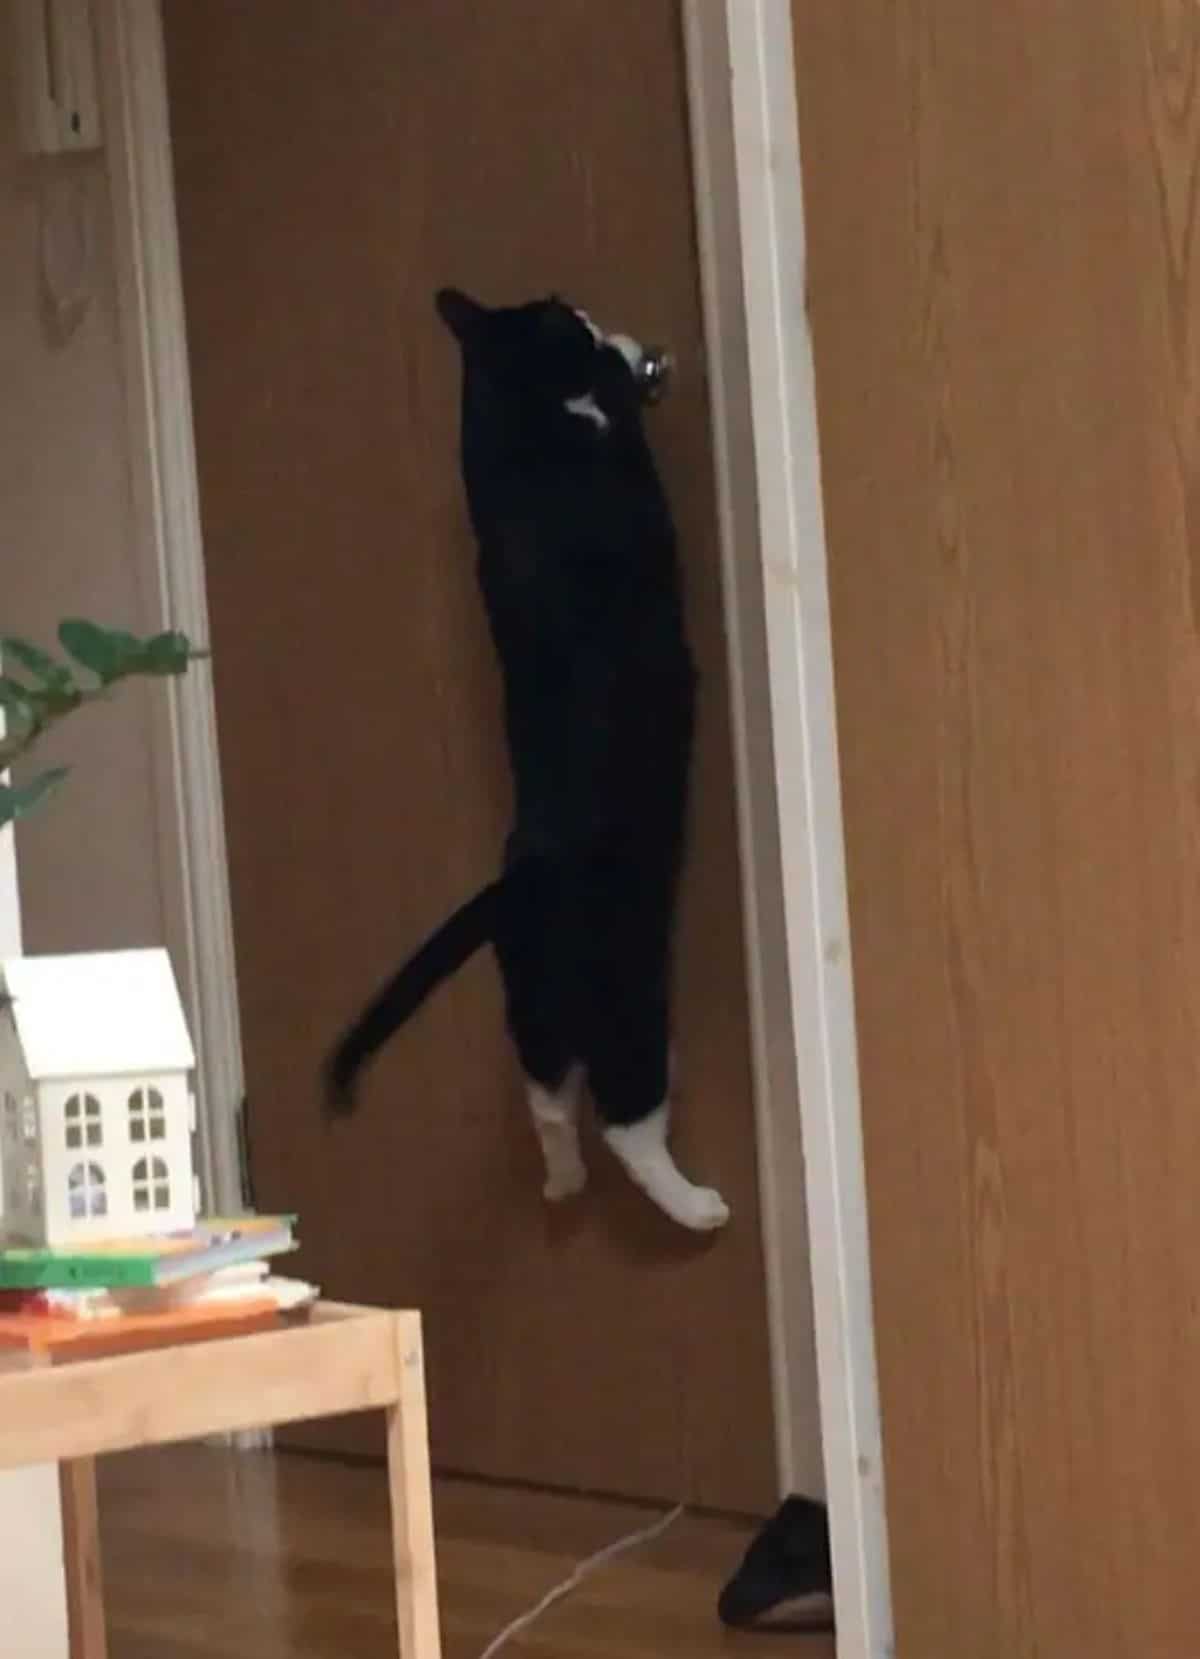 black and white cat hanging onto the doorknob of a brown door